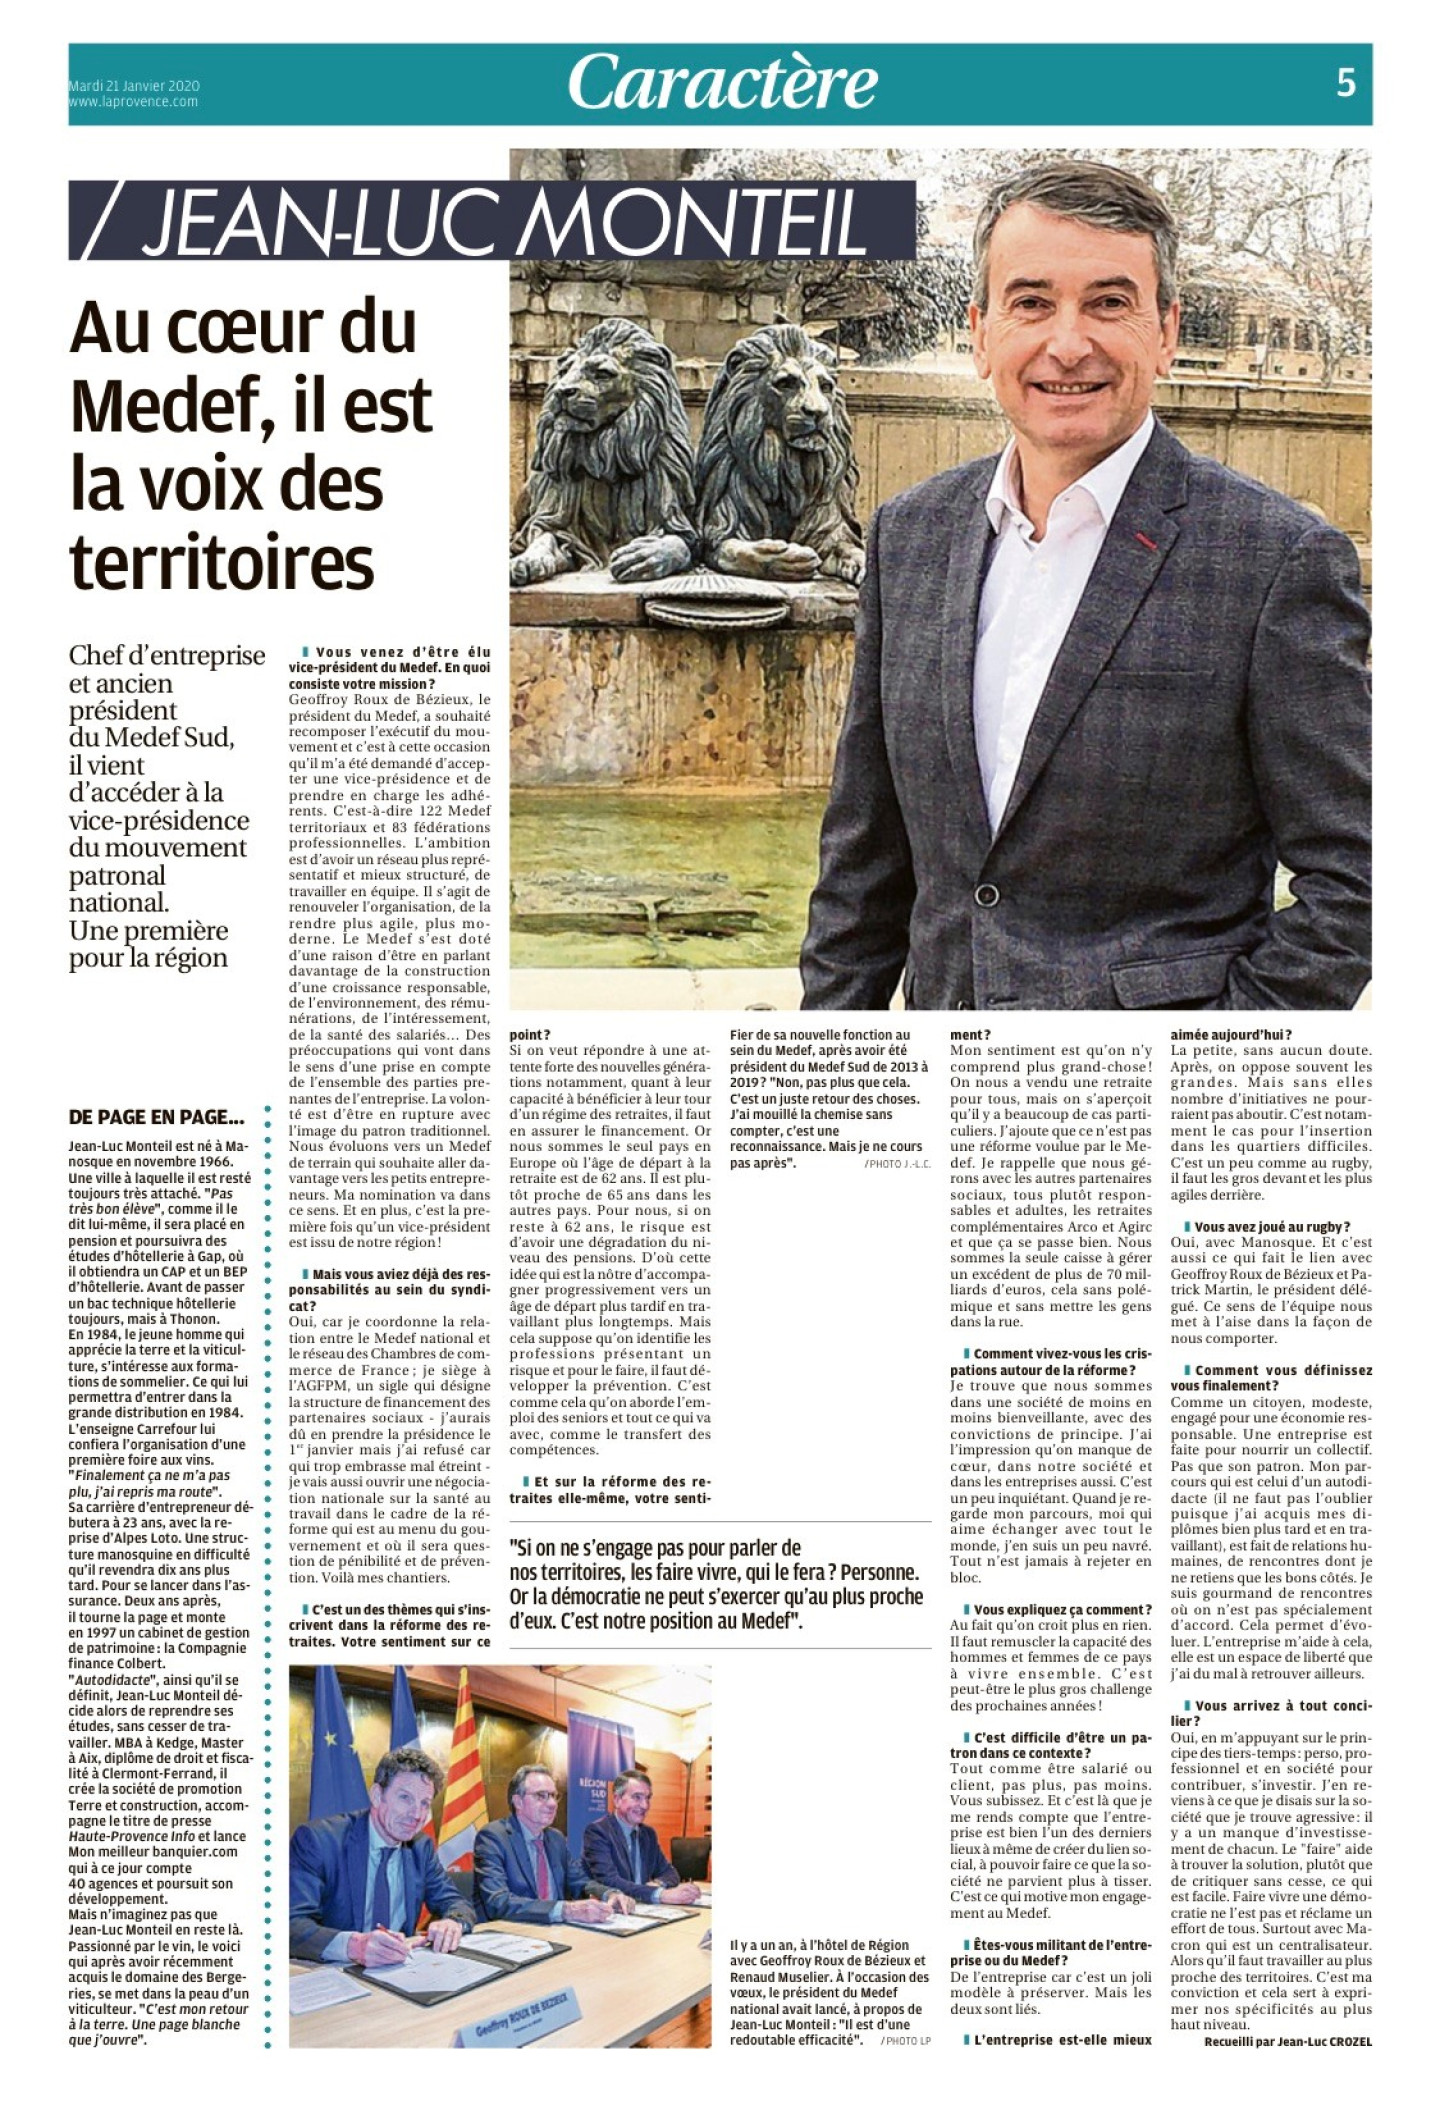 Jean-Luc Monteil, au coeur du Medef, il est la voix des territoires